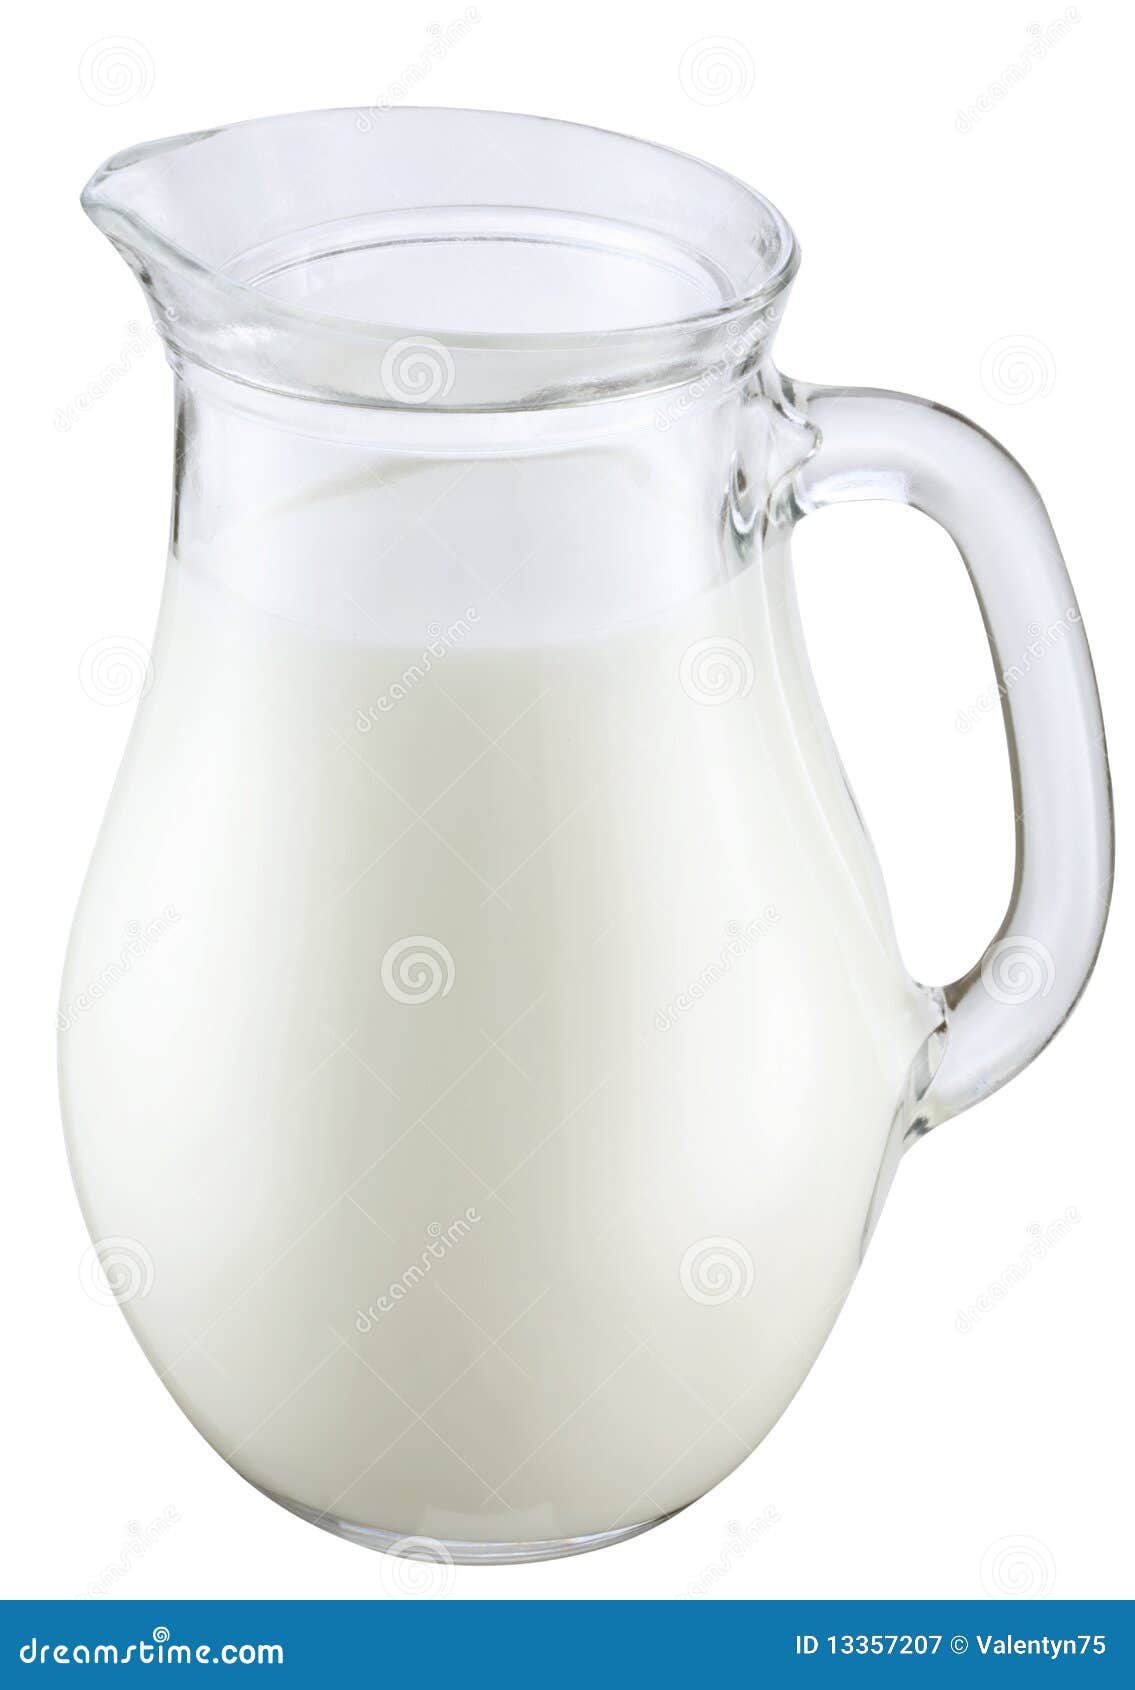 jag of milk